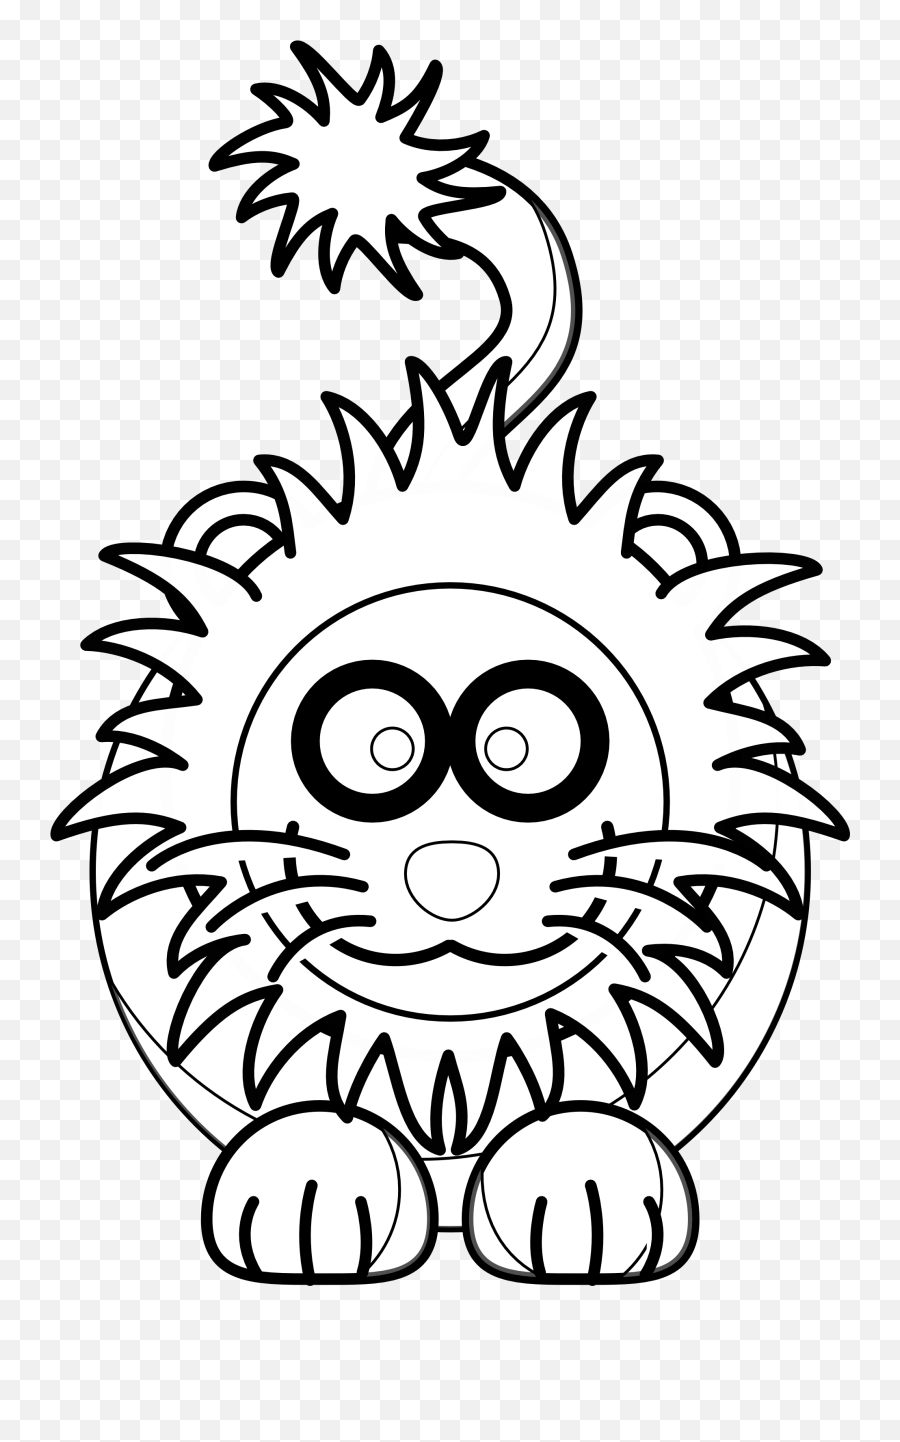 Lion Clipart Images - Black And White Clipart Lion Emoji,Lion Clipart